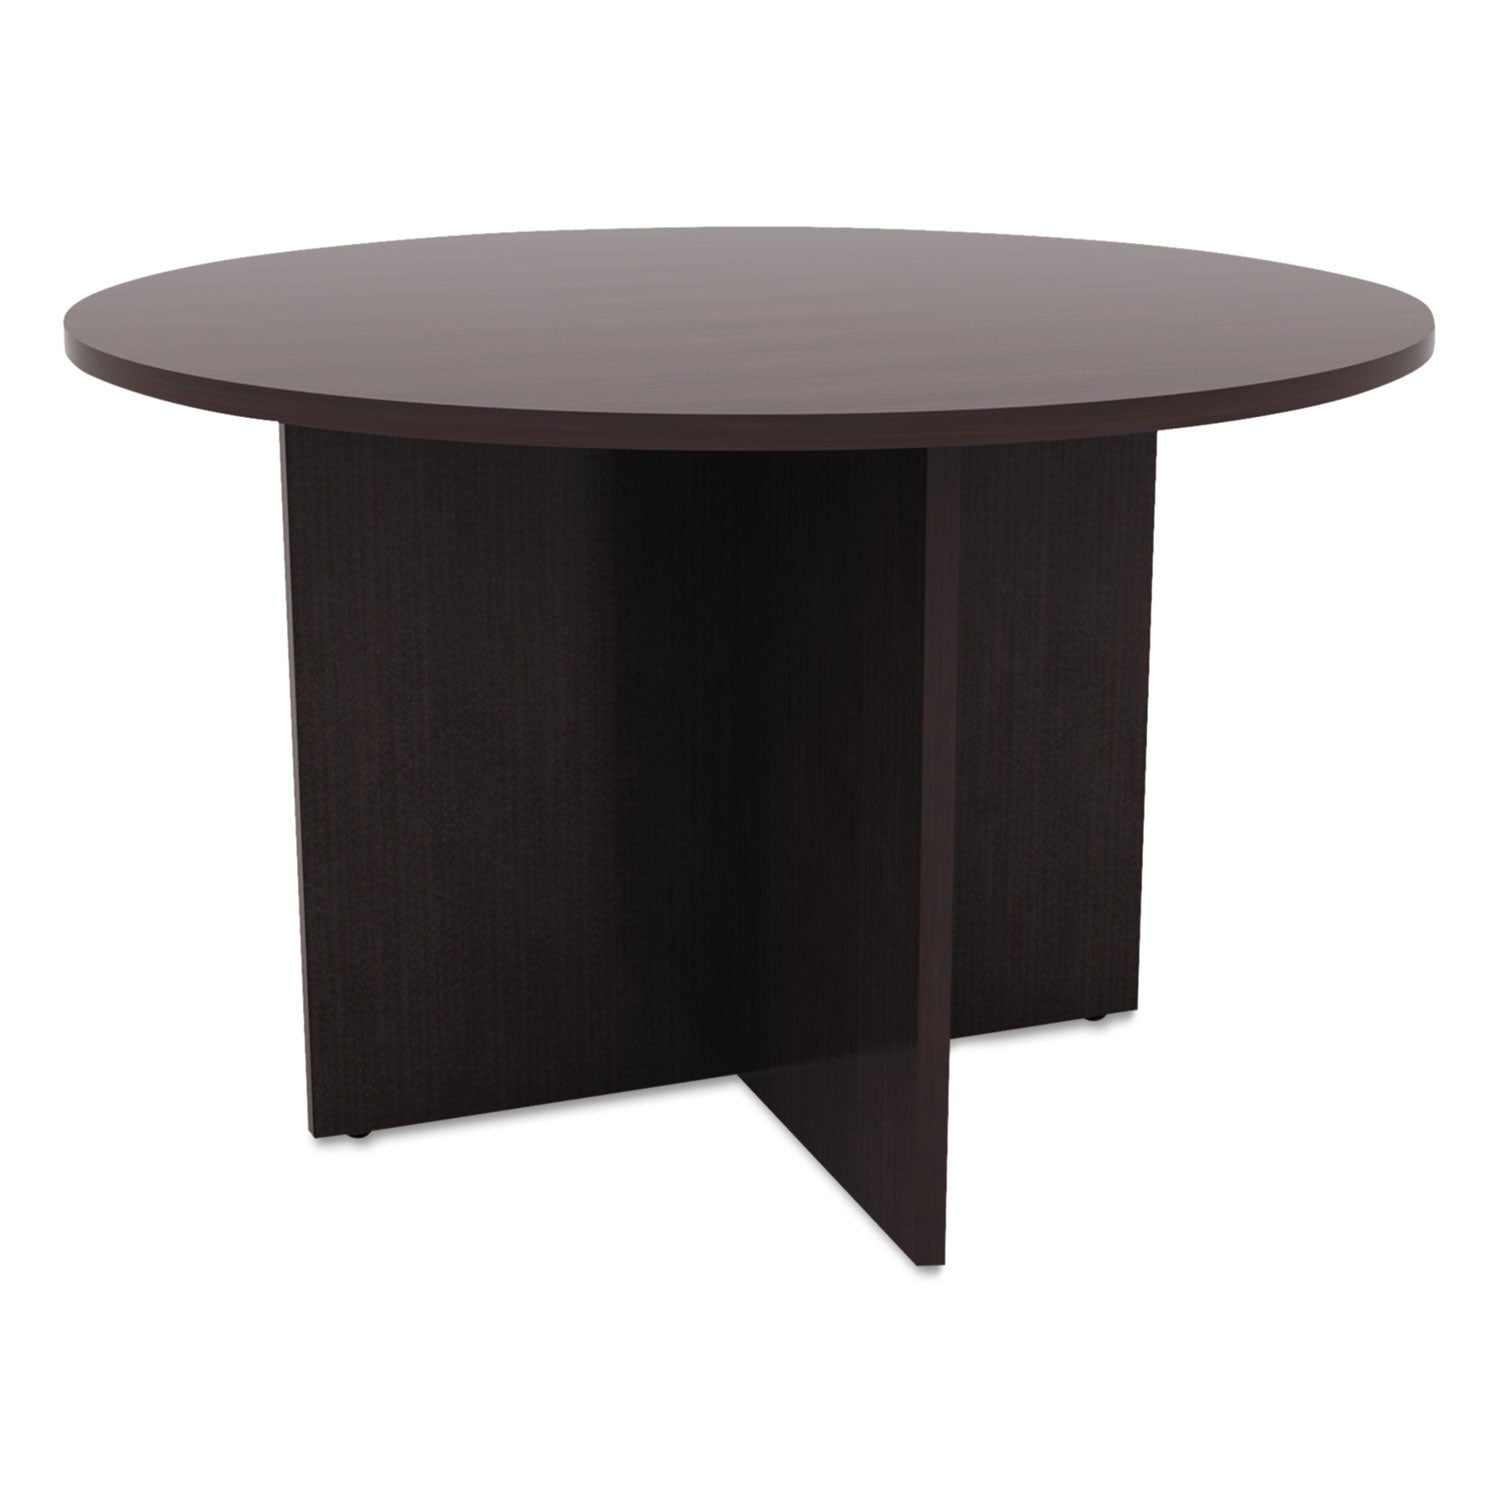 alera-valencia-round-conference-table-with-legs-42-diameter-x-295h-espresso_aleva7142es - 1